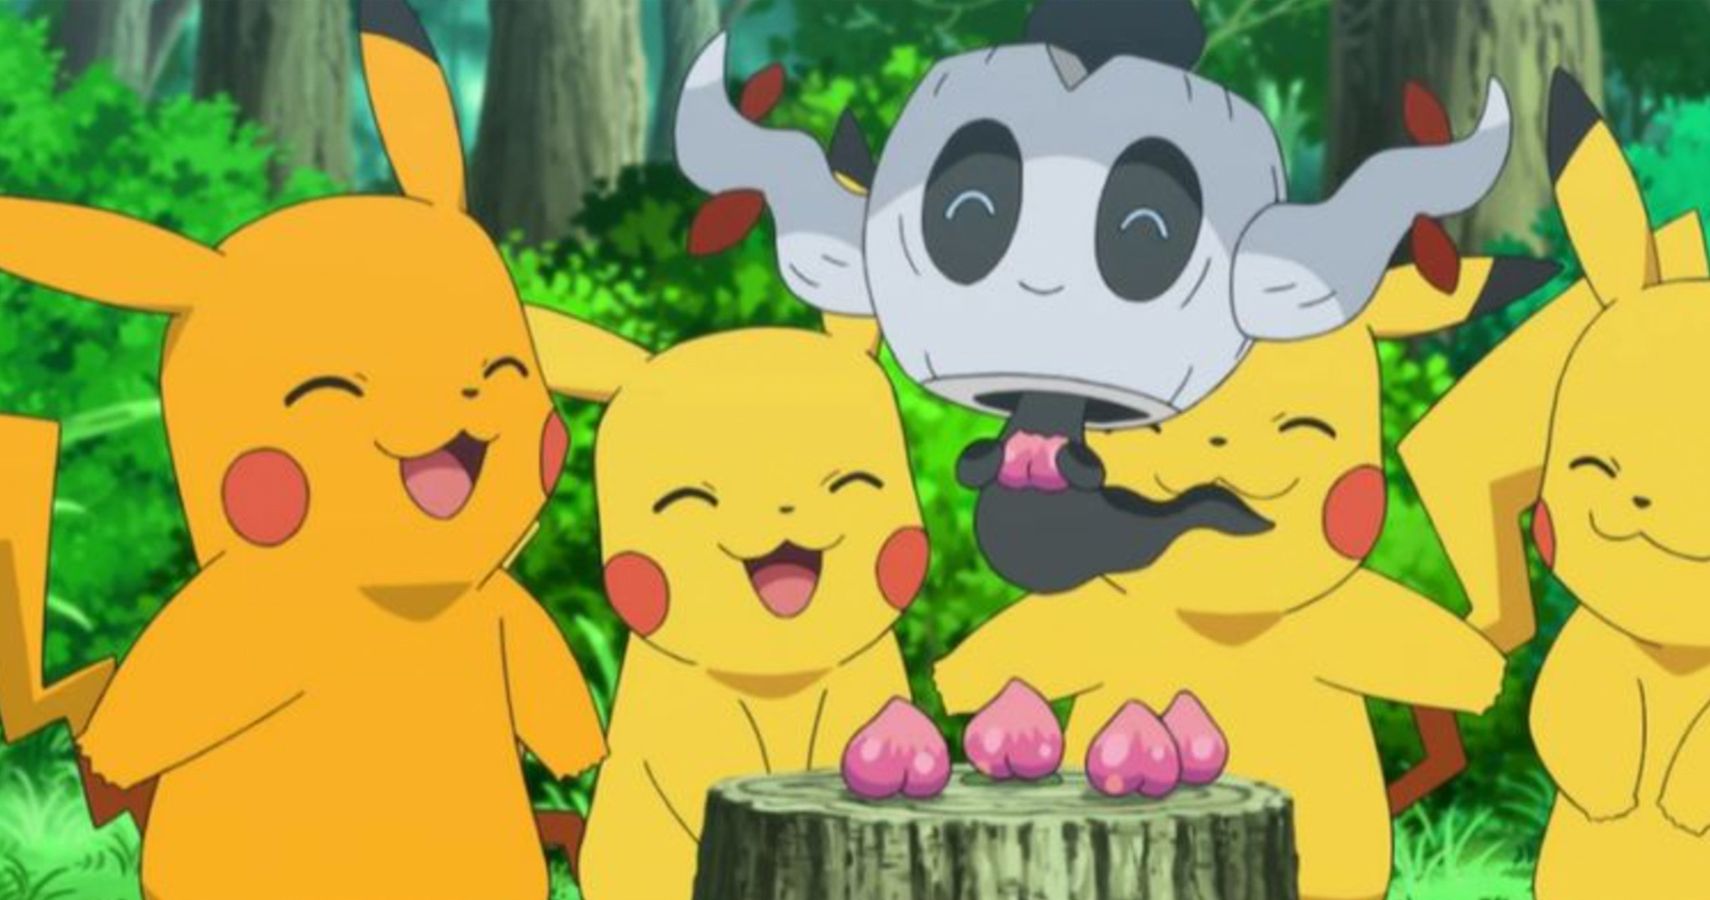 Shiny Pikachu The History Of The Pokémon Variation